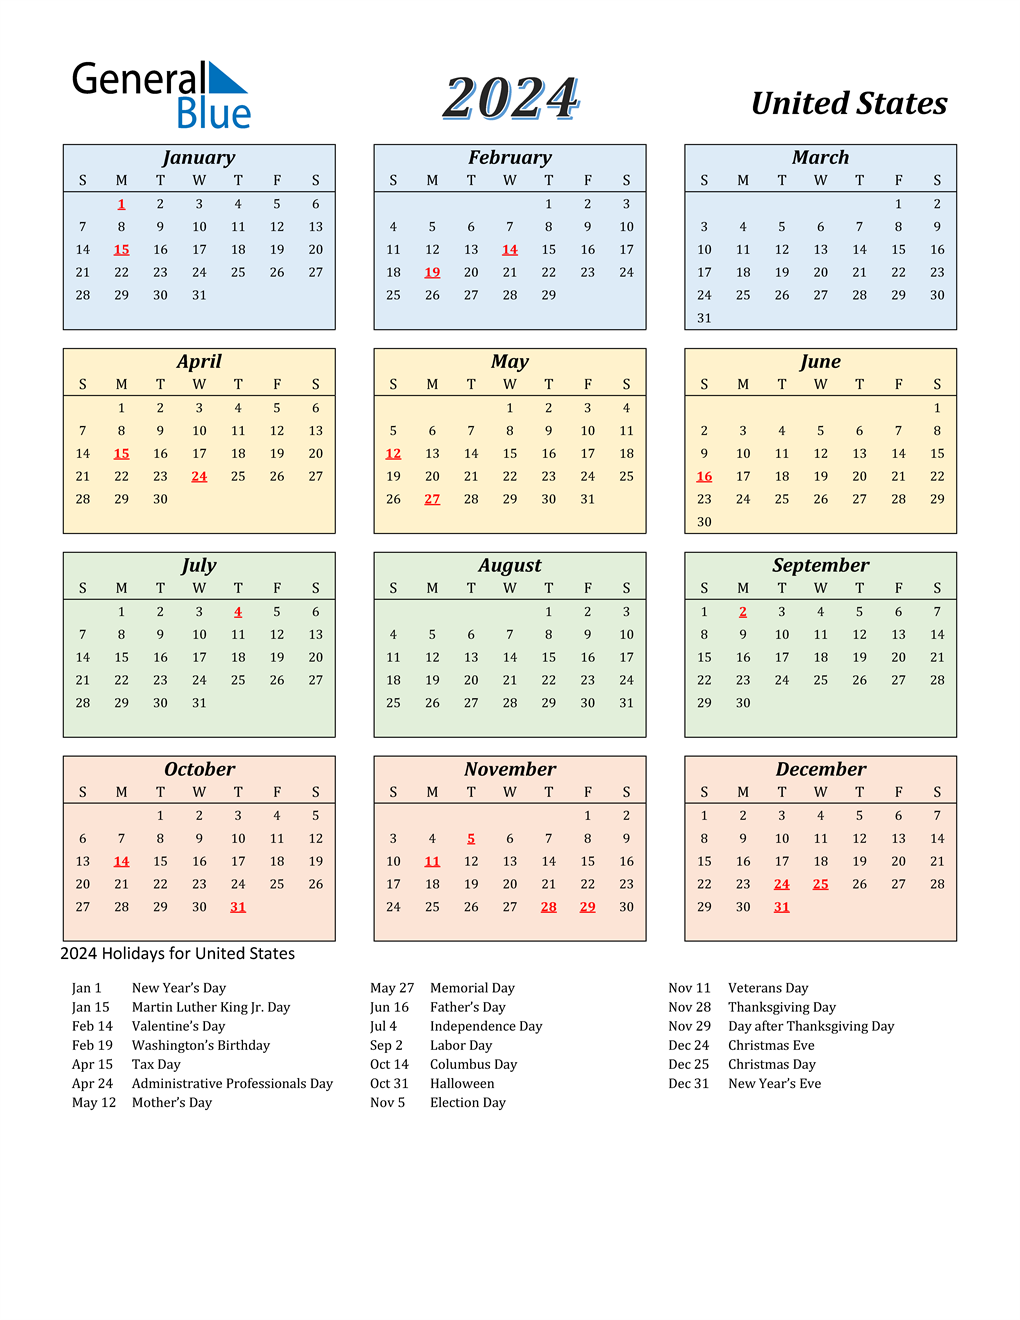 free-2024-calendar-with-holidays-zohal-gambaran